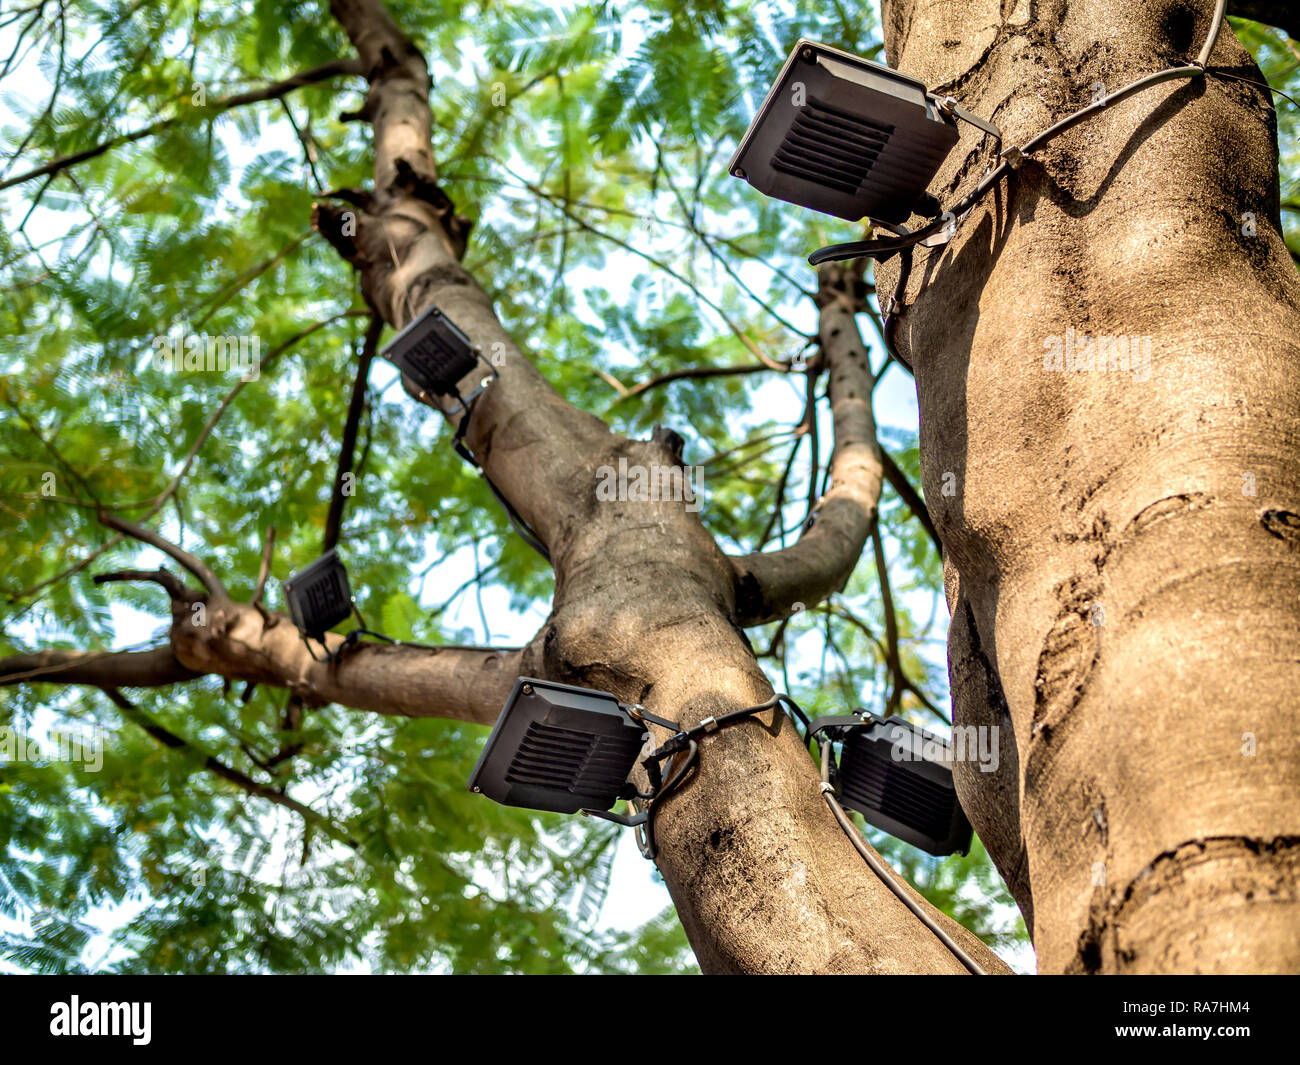 LED-Strahler auf dem großen Baum im Garten installiert Stockfotografie -  Alamy